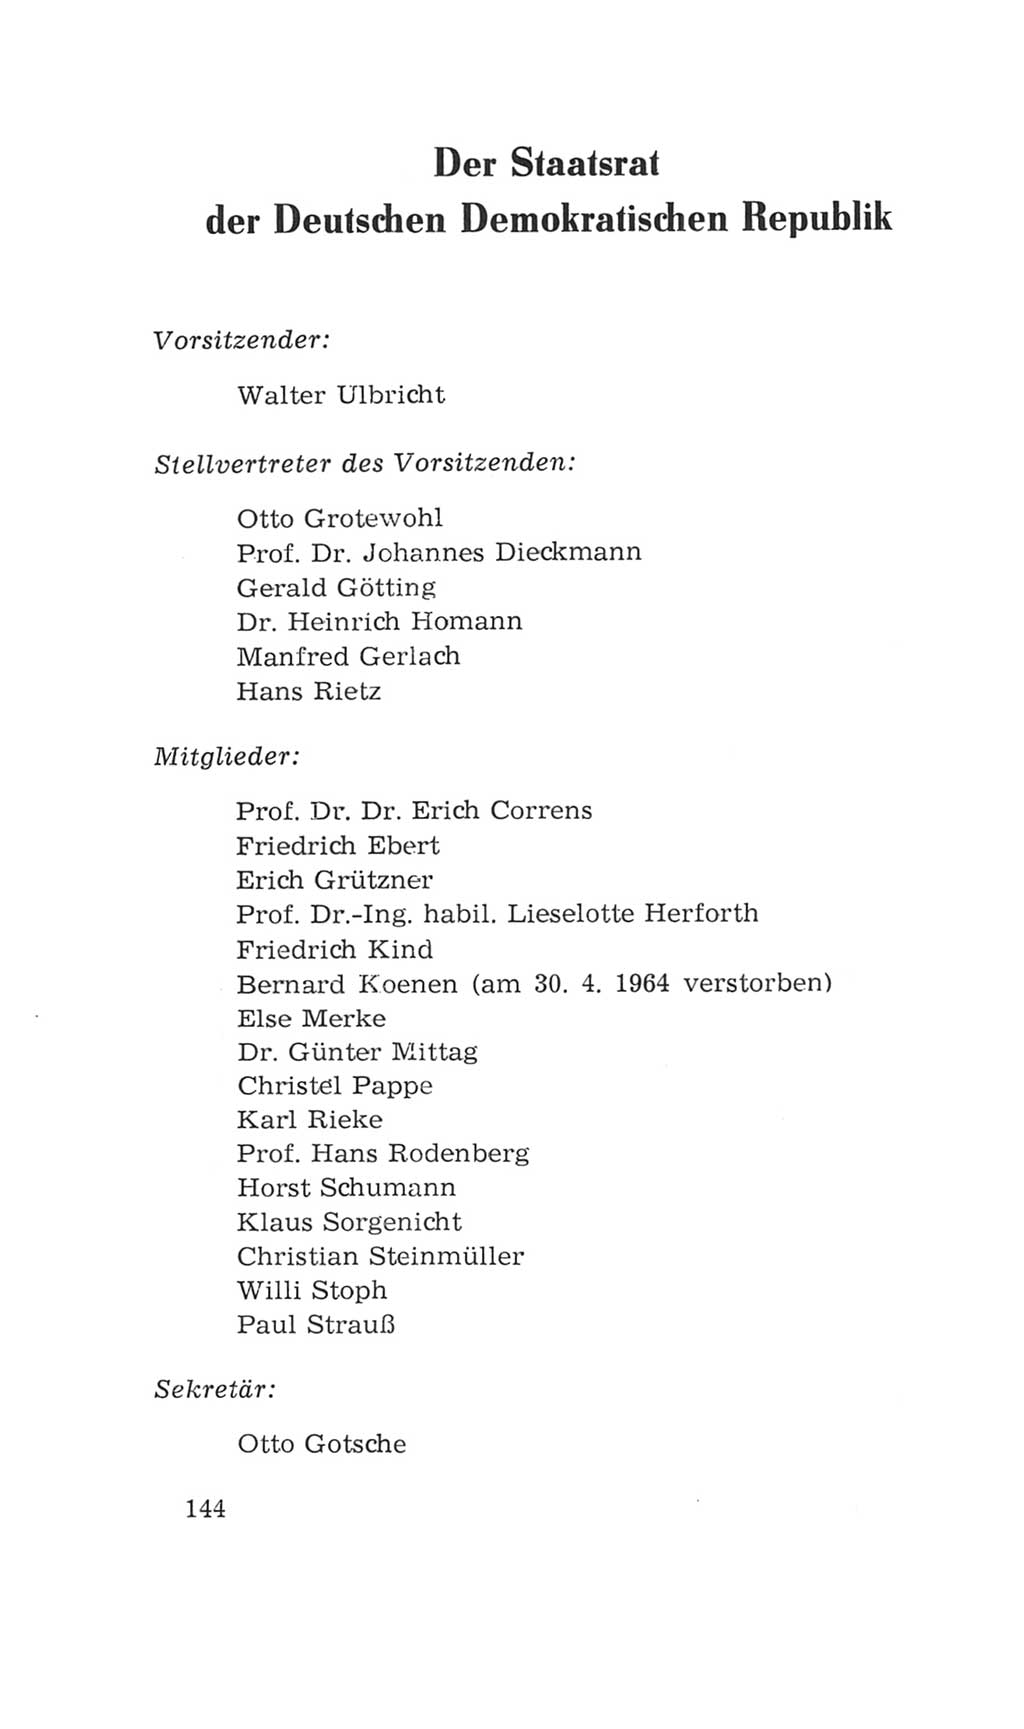 Volkskammer (VK) der Deutschen Demokratischen Republik (DDR), 4. Wahlperiode 1963-1967, Seite 144 (VK. DDR 4. WP. 1963-1967, S. 144)